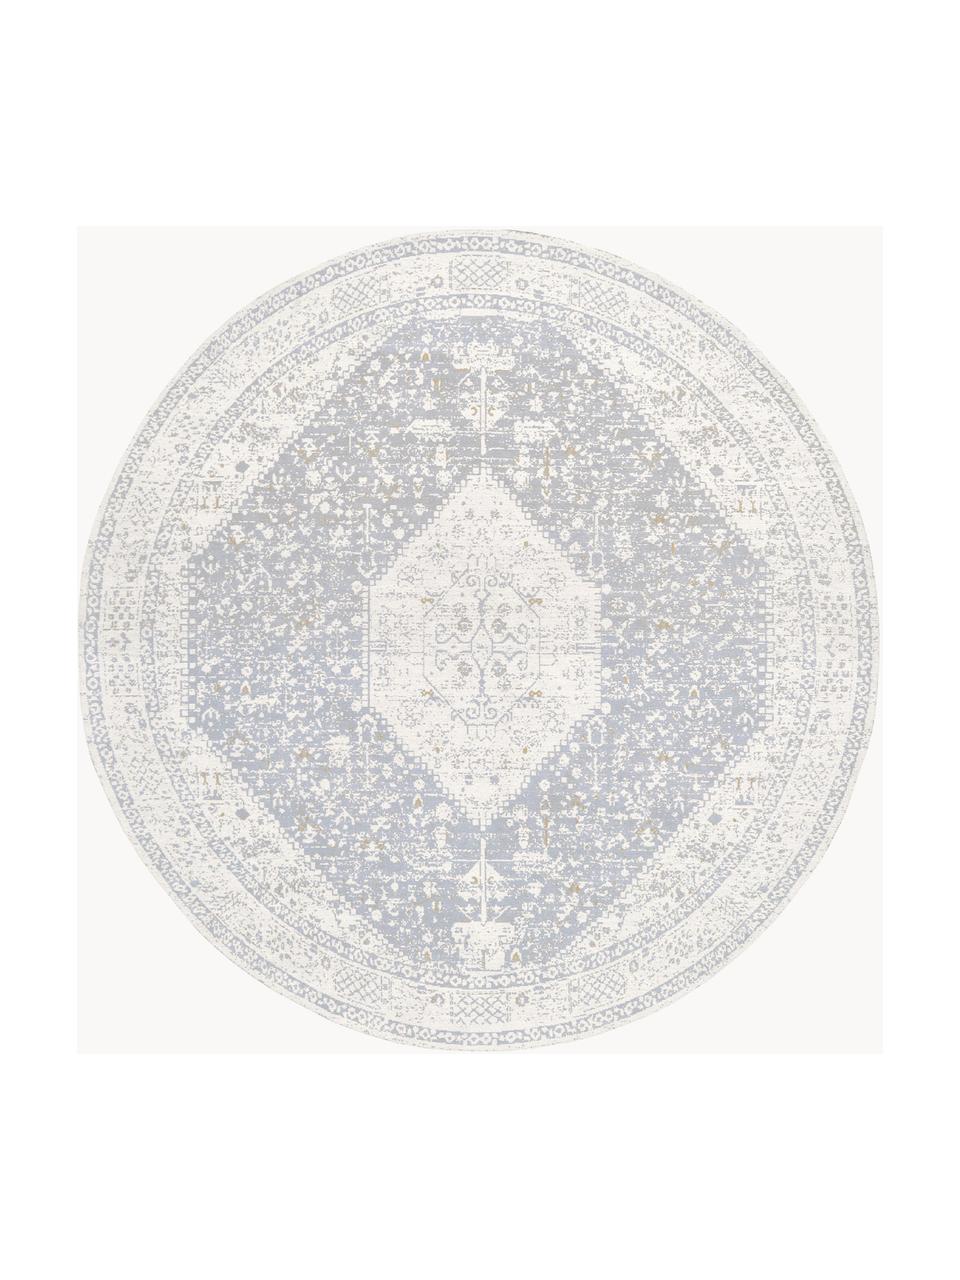 Kulatý žinylkový koberec Neapel, ručně tkaný, Šedomodrá, krémově bílá, Ø 120 cm (velikost S)